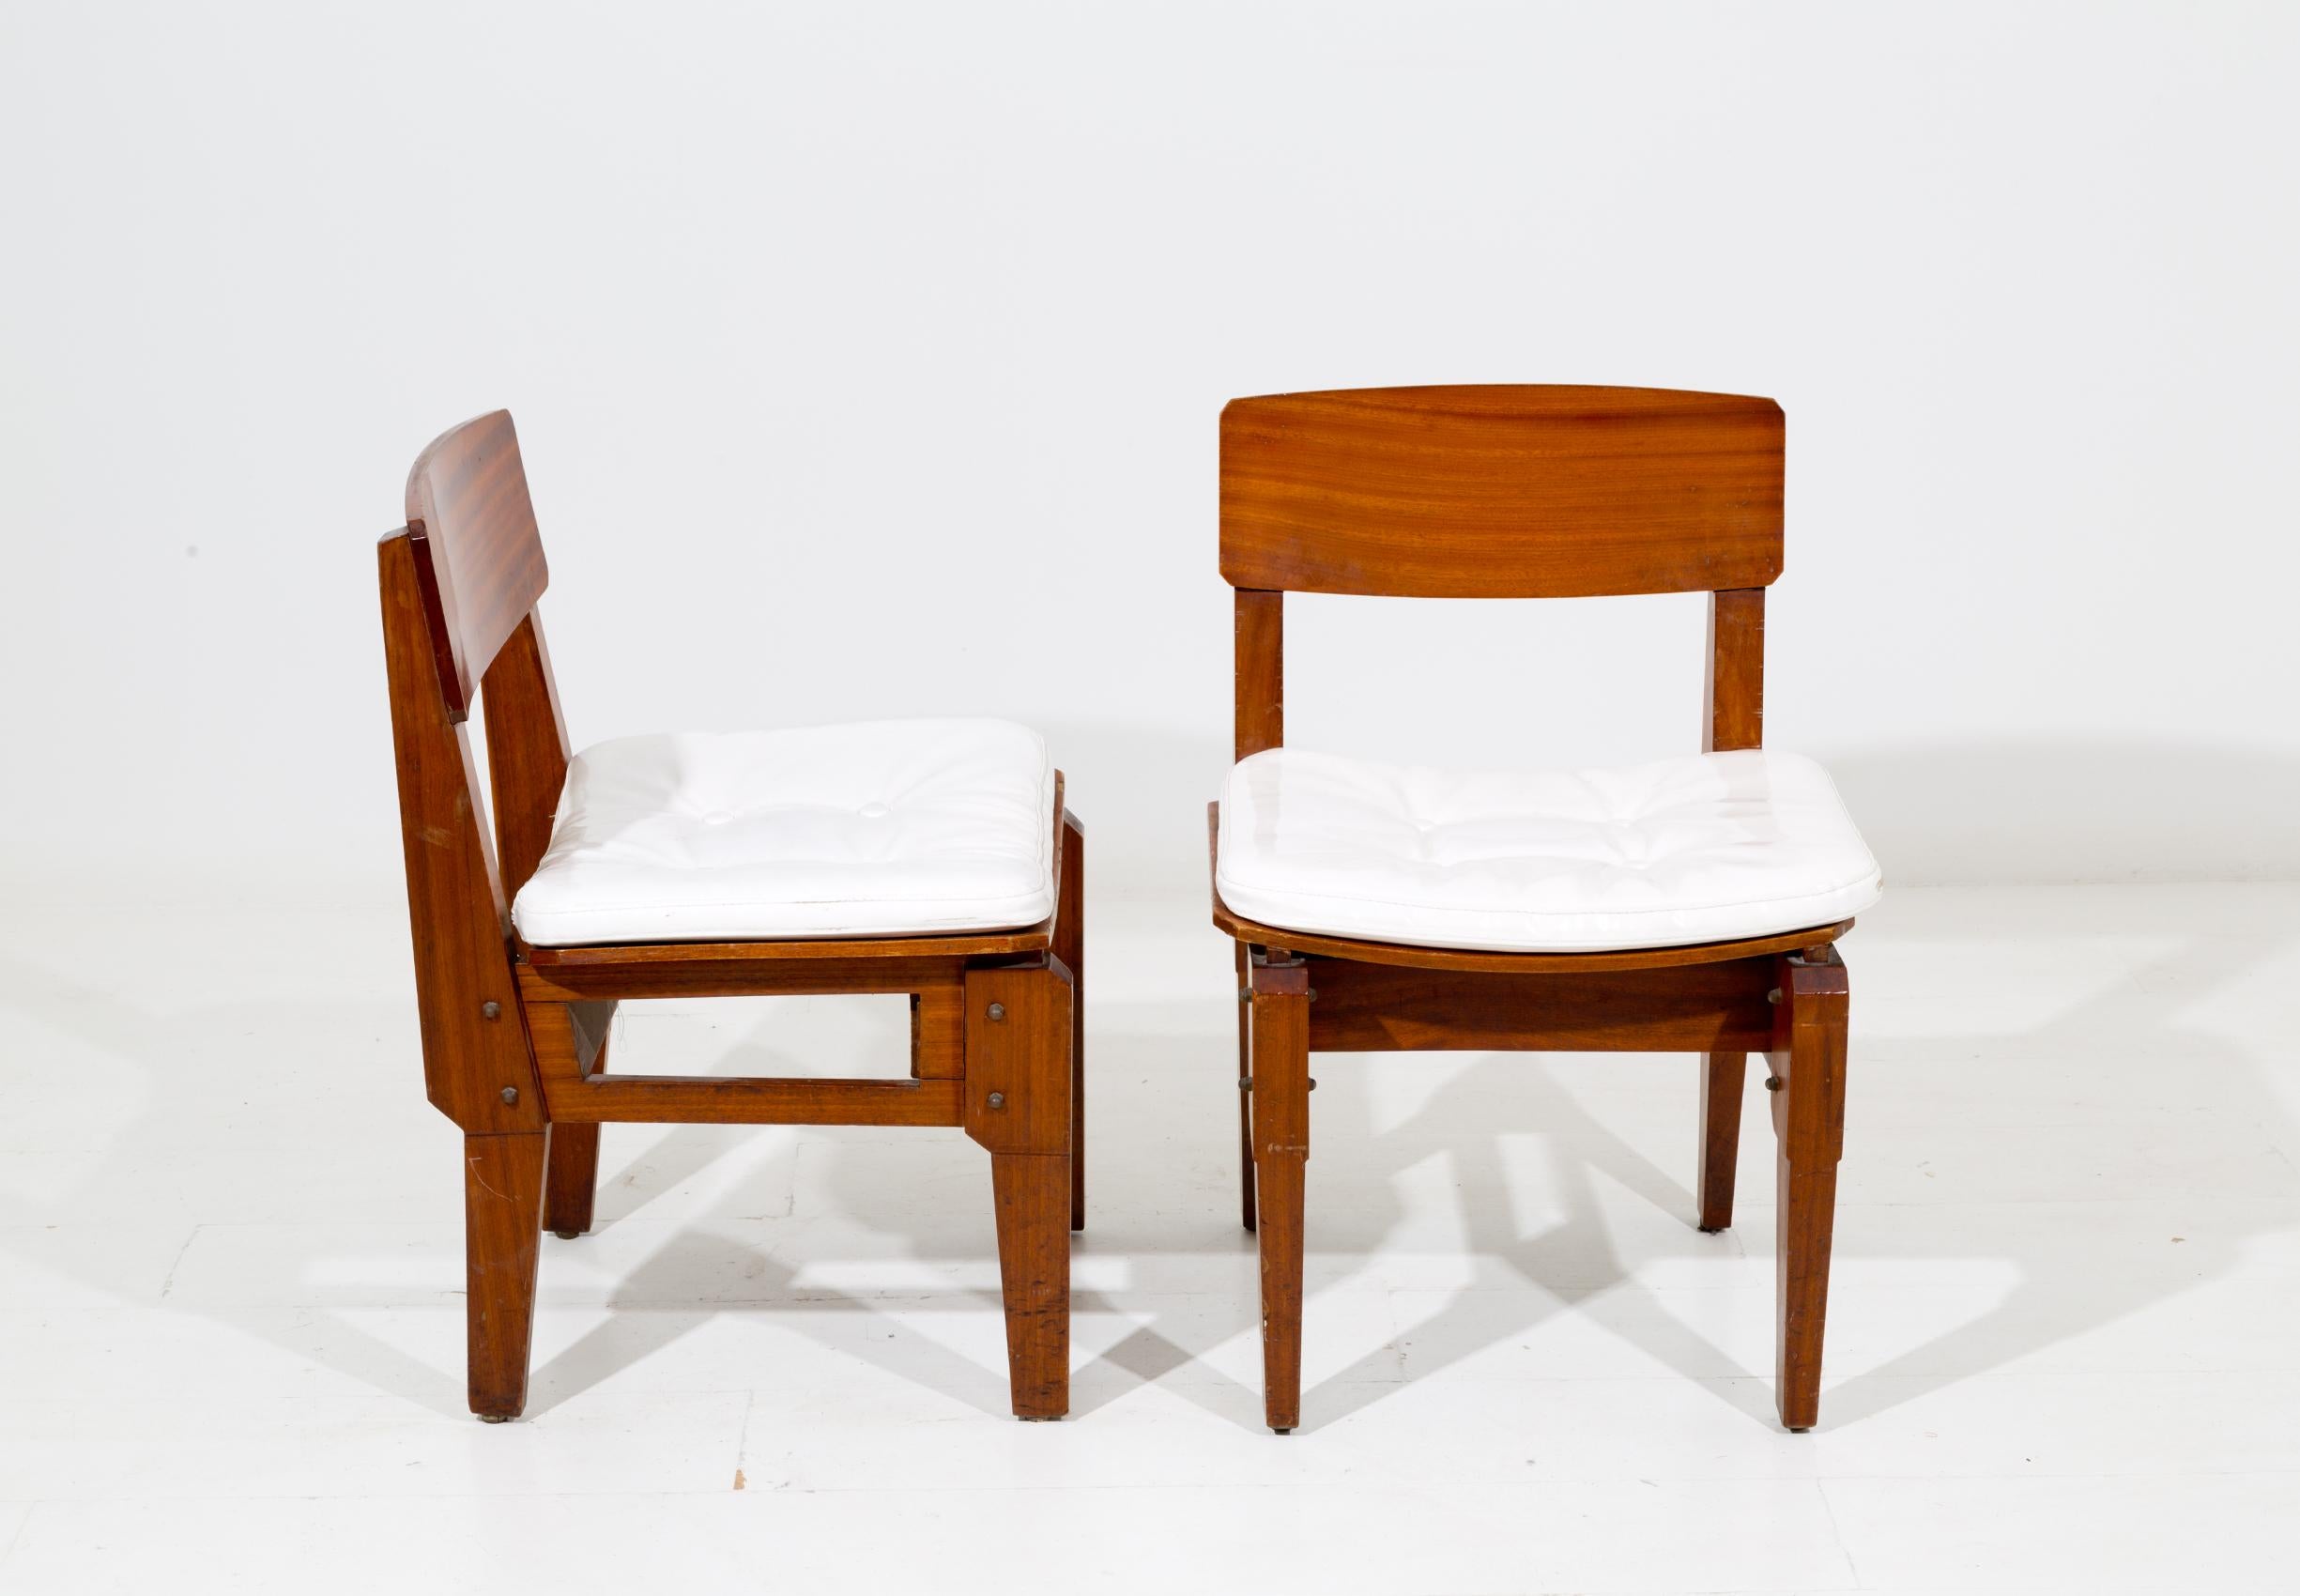 Seltener Satz von sechs italienischen Stühlen, entworfen vom Architekten Vito SanGirardi für das Geschäft Pallante in Bari, Palo del Colle in den 1950er Jahren. Das Set ist aus robustem Mahagoniholz gefertigt. Der Sitz ist aus weißem italienischem